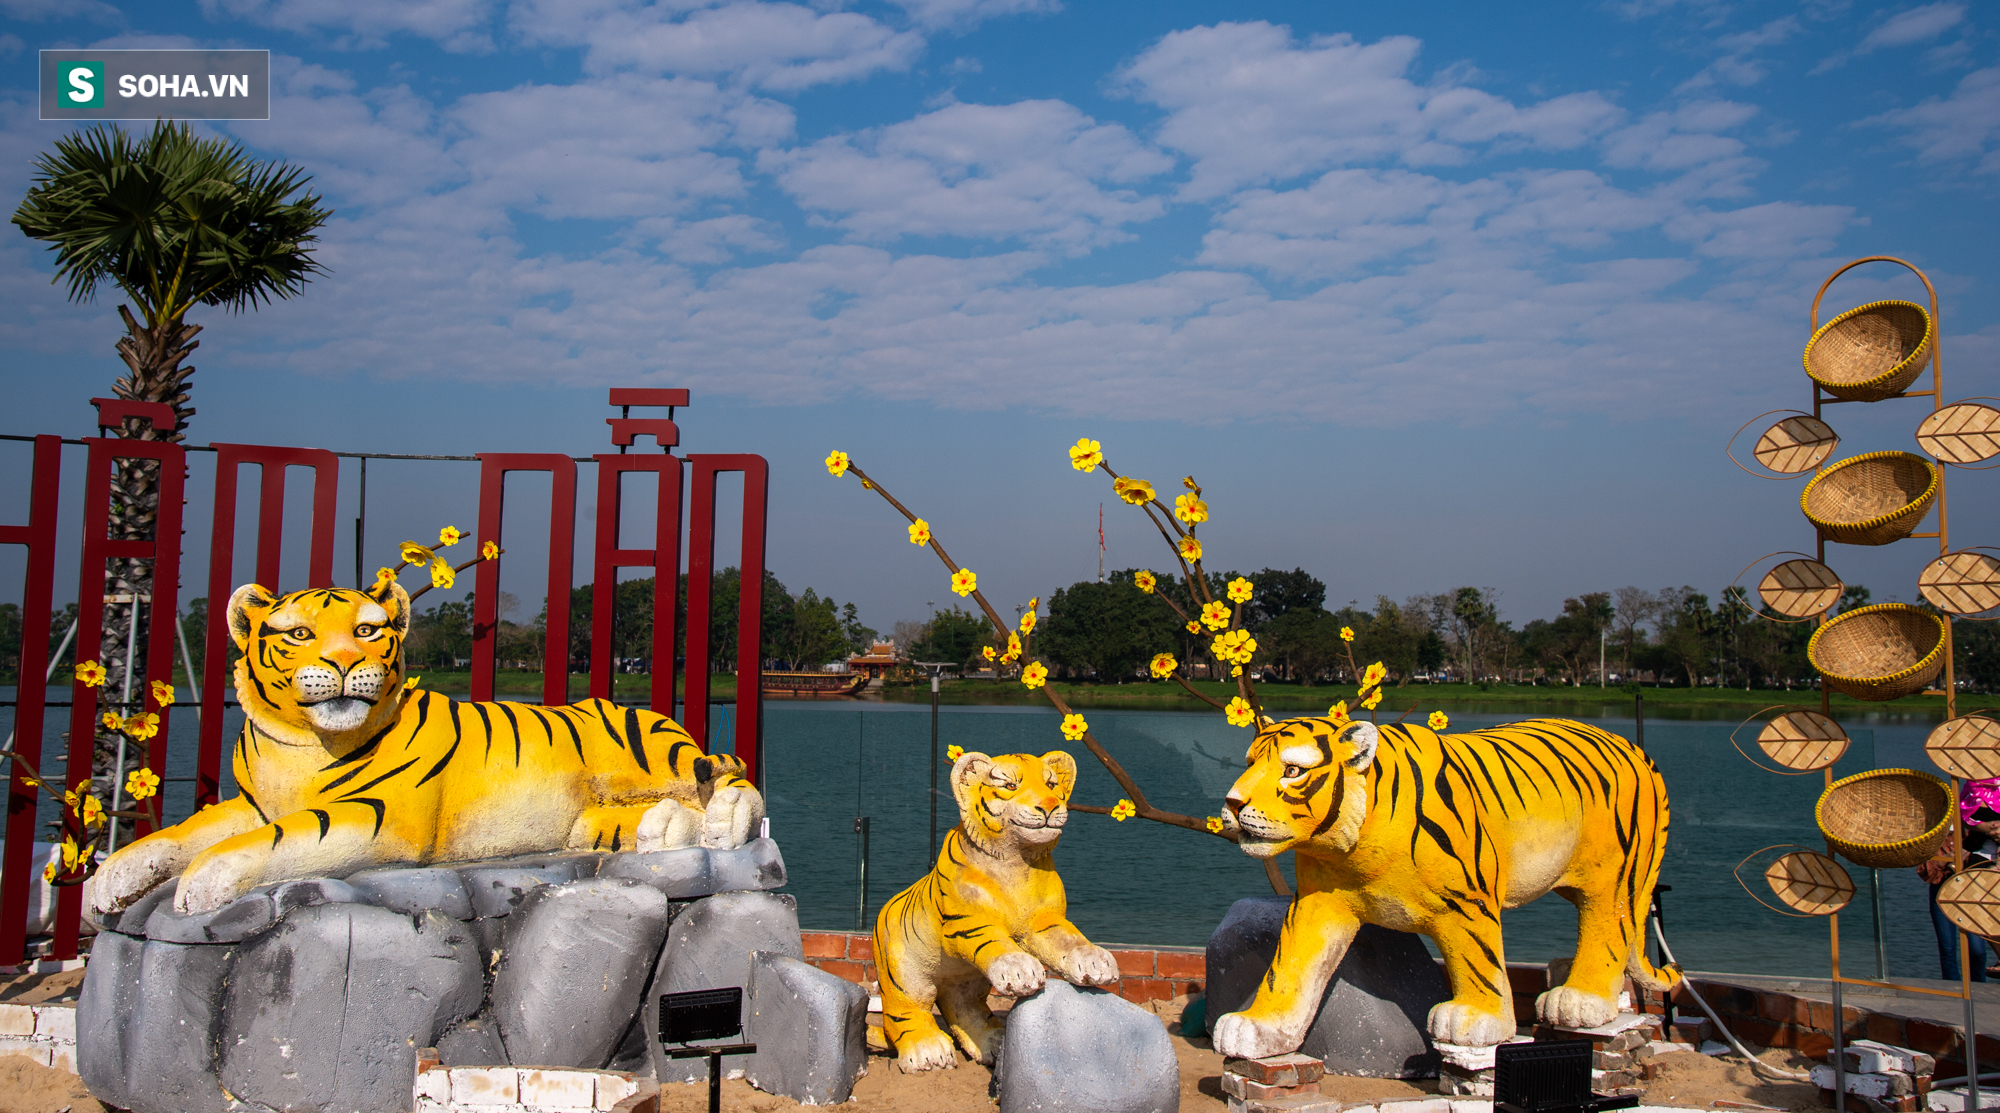 Tượng hổ ở Huế là một trong những công trình nghệ thuật nổi tiếng của xứ Huế. Hãy cùng chiêm ngưỡng vẻ đẹp của tượng hổ và mười hai chú tiểu nghịch ngợm trên lưng hổ trong bức ảnh vô cùng độc đáo này.